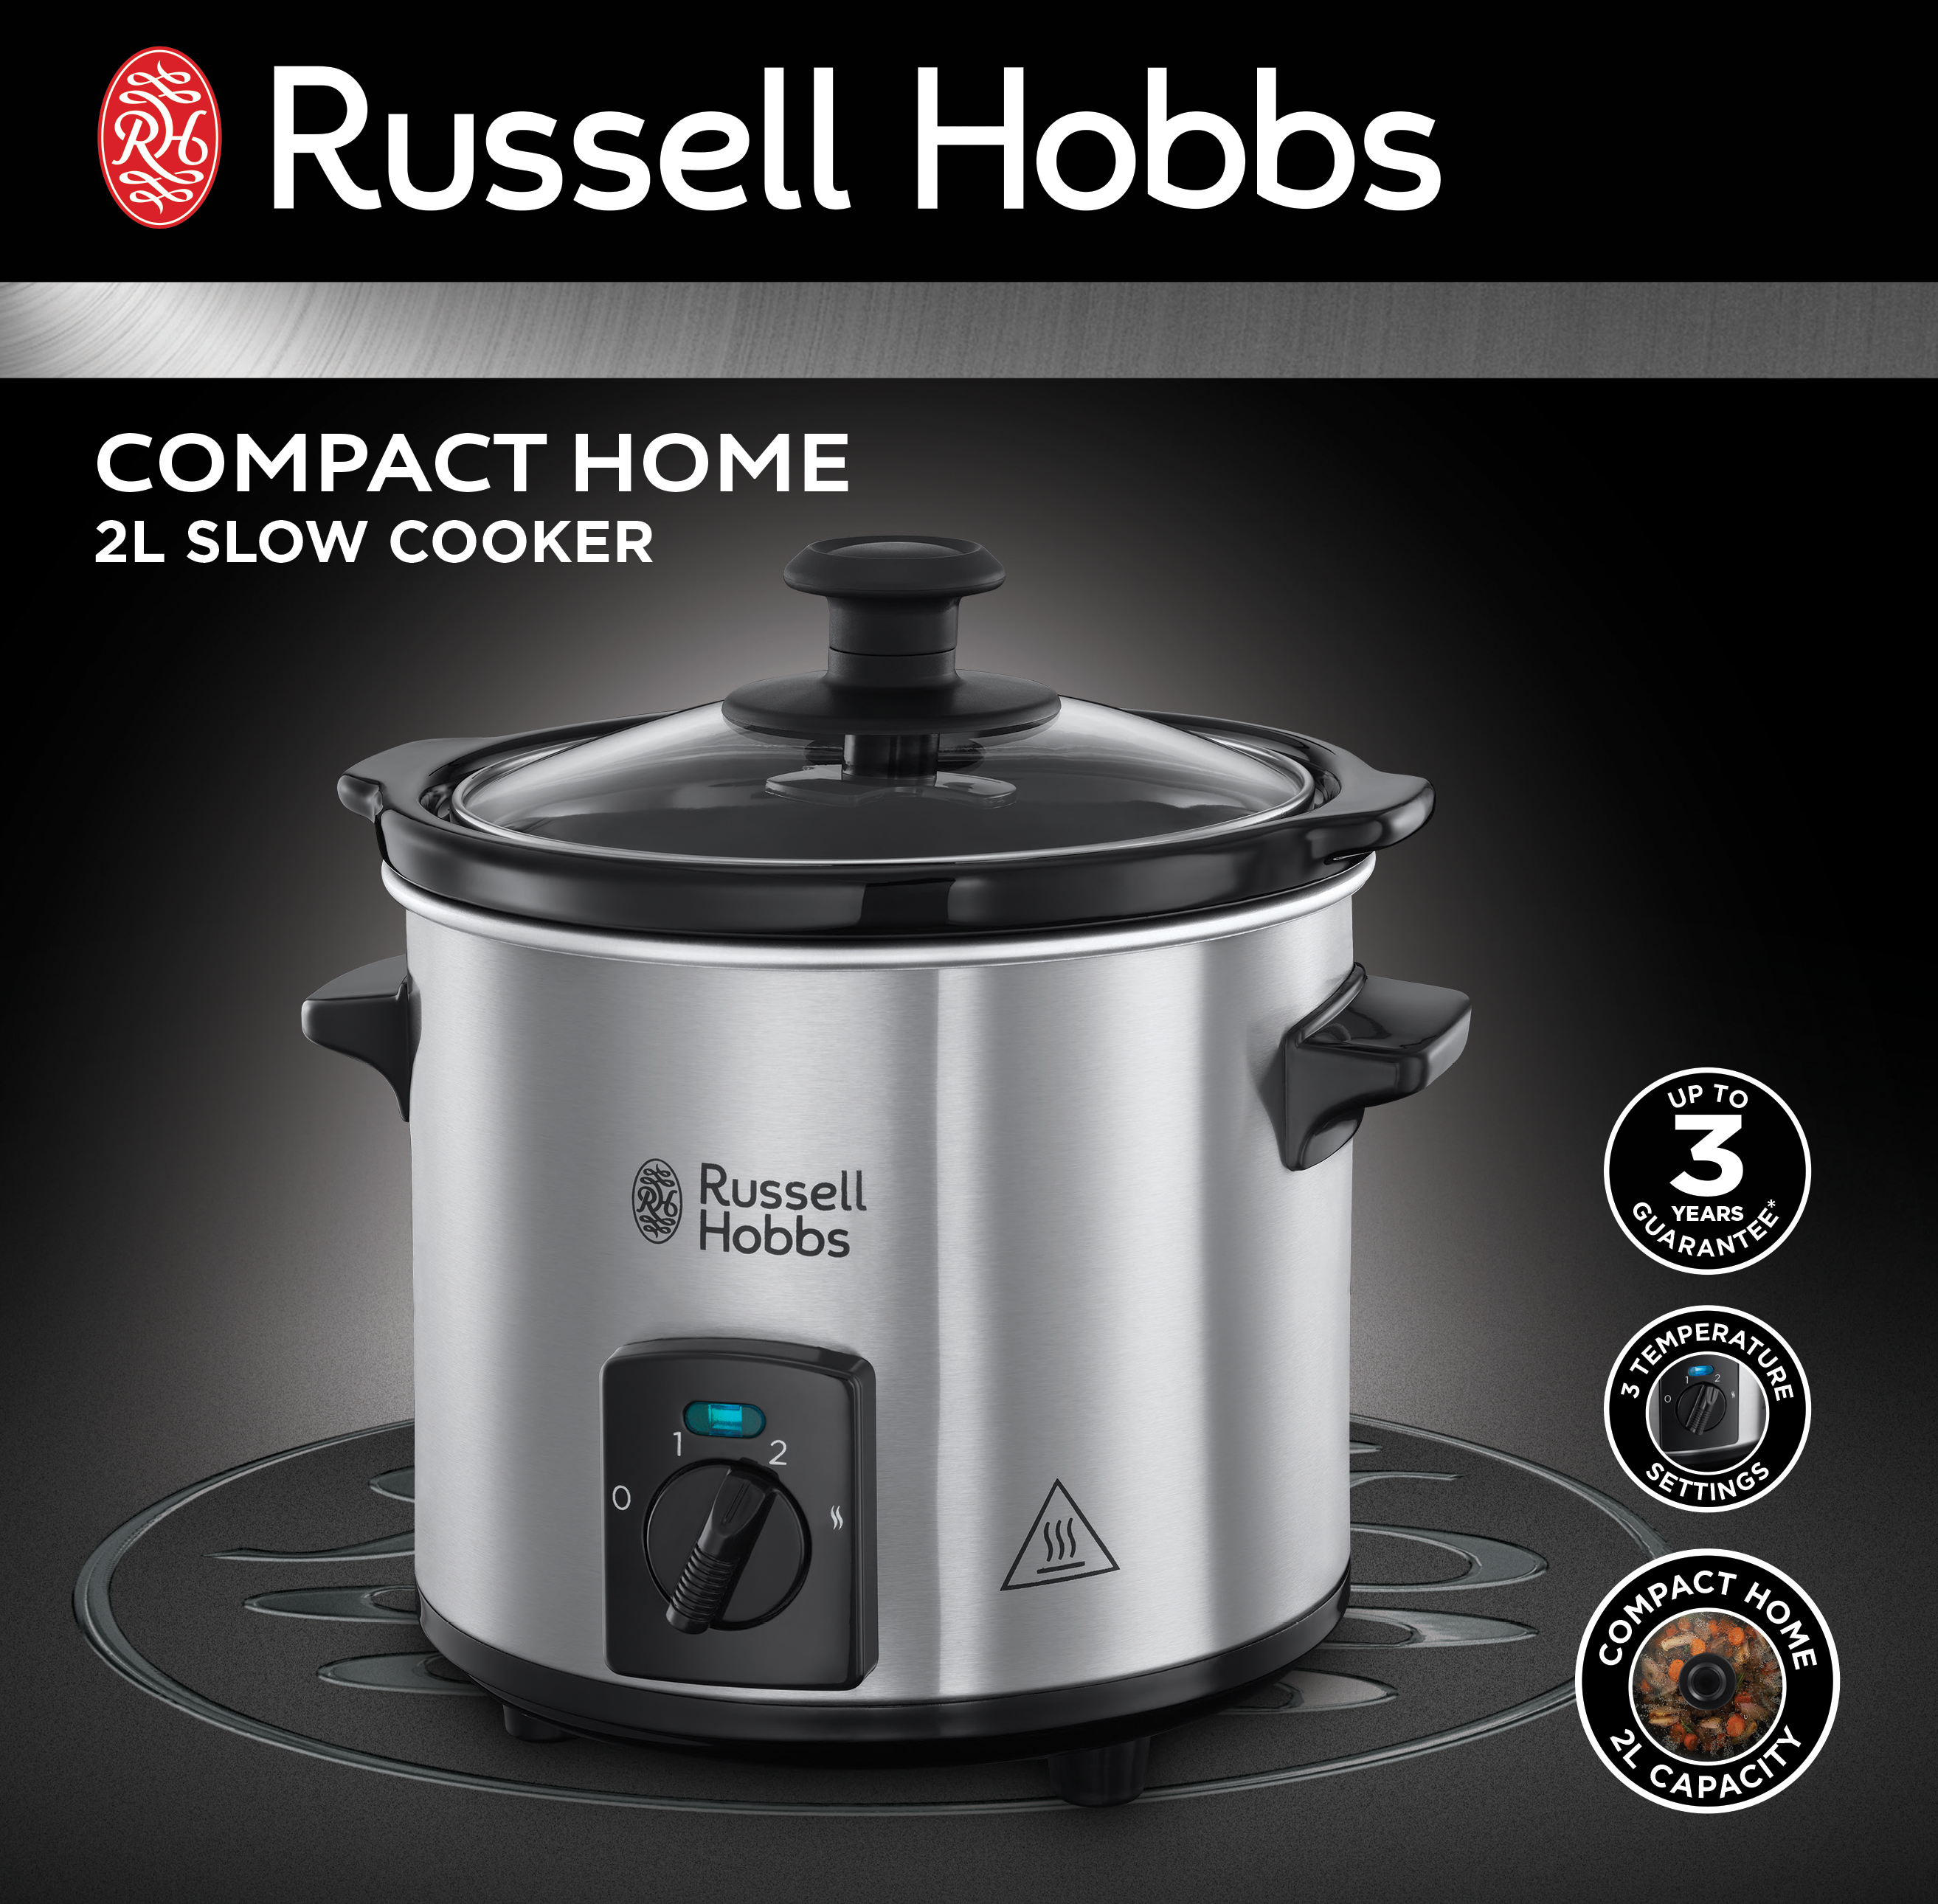 puñetazo simplemente Aja Russell Hobbs presenta su olla de cocción lenta Compact Home